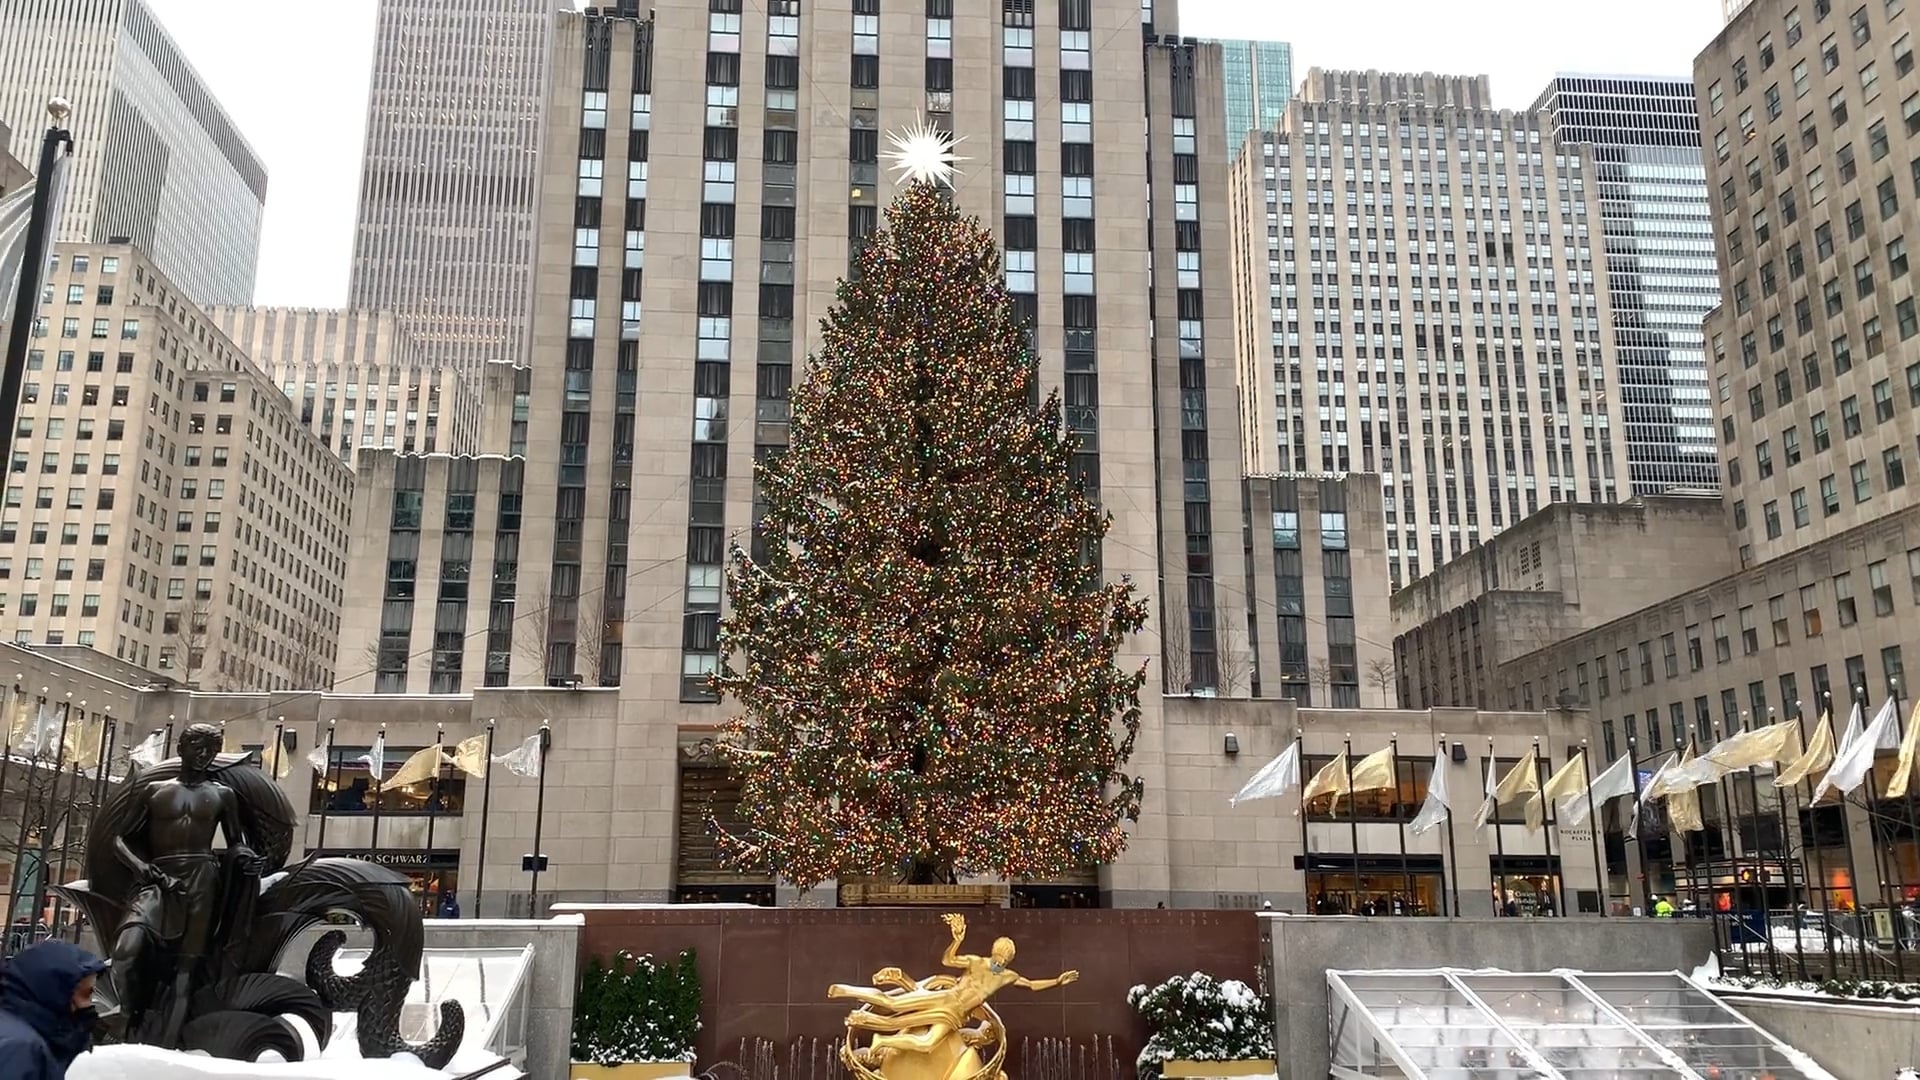 Rockefeller Center, Christmas tree, Festive atmosphere, Holiday spirit, 1920x1080 Full HD Desktop